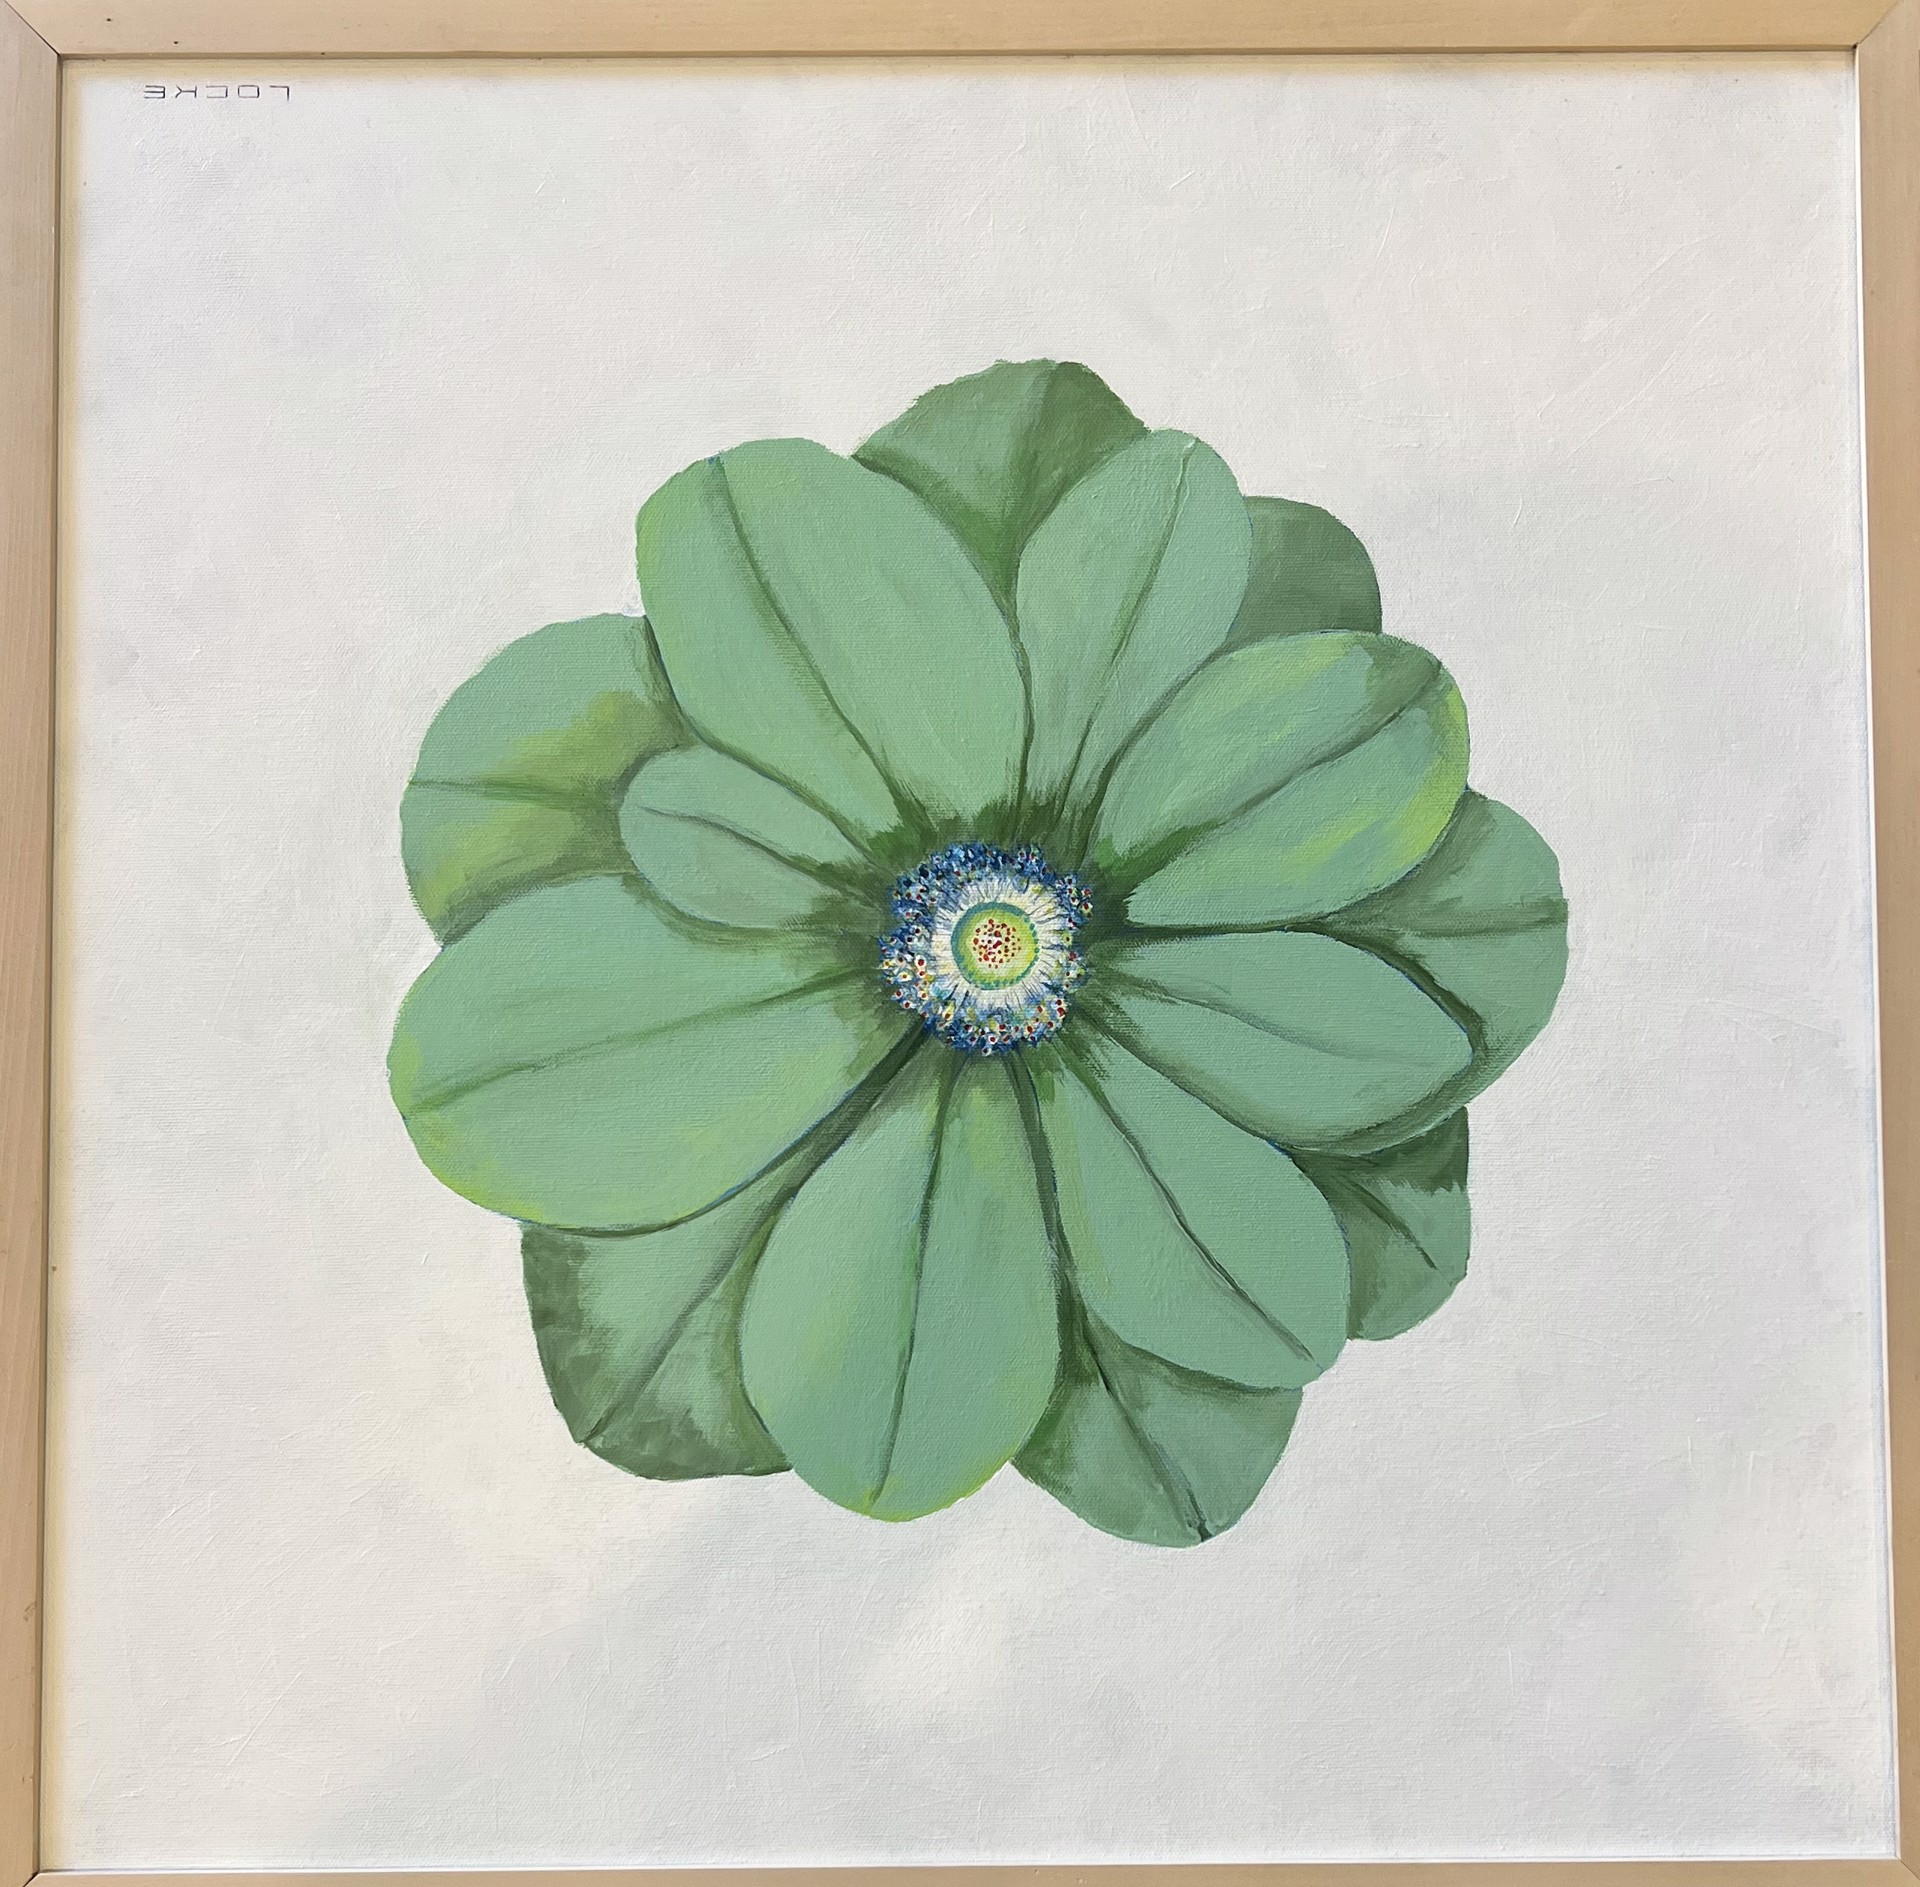 Green flower by Larry Martin Locke